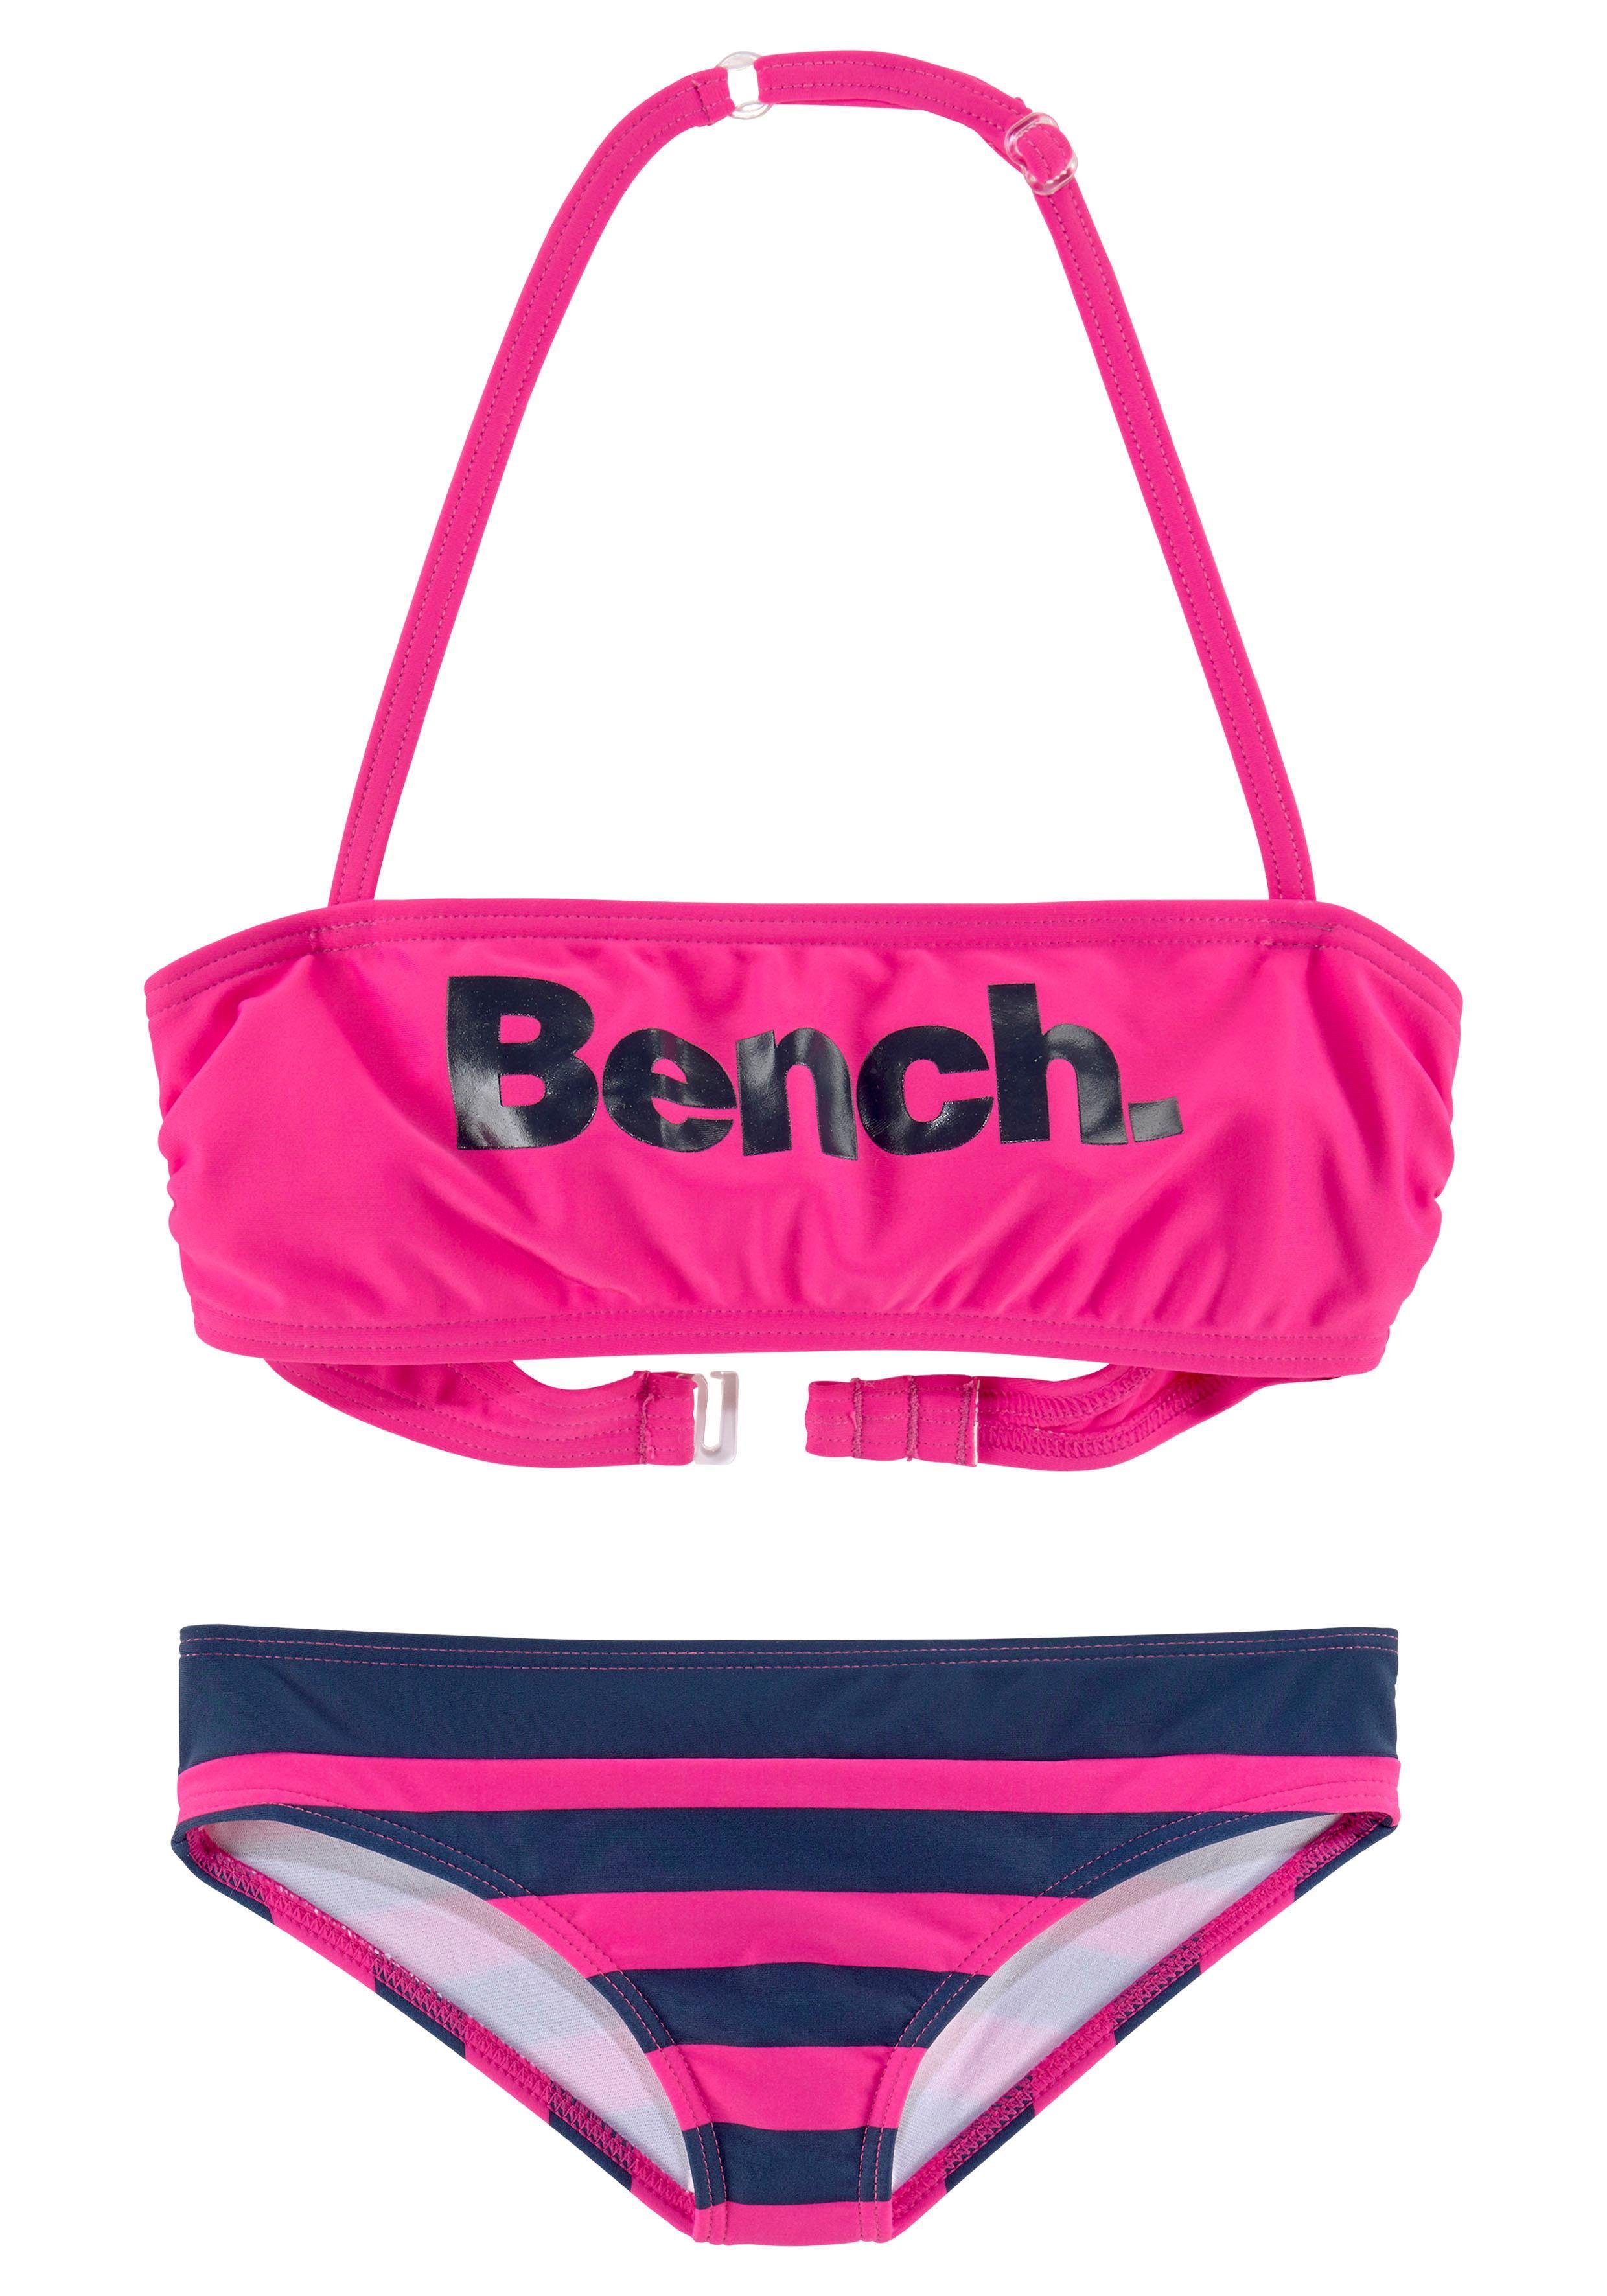 Logoprint großem Bandeau-Bikini mit Bench.